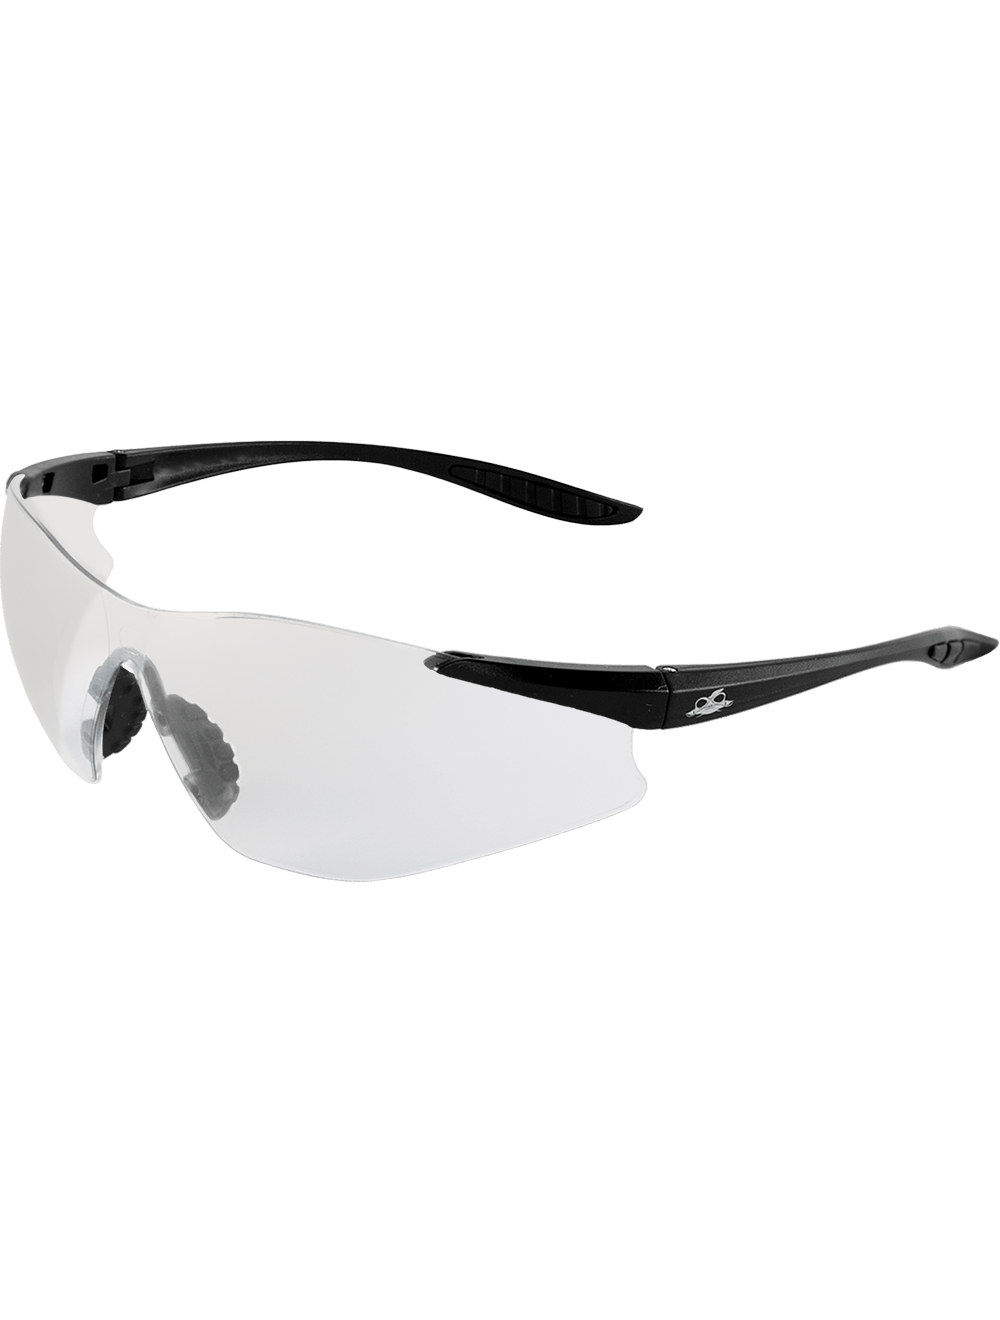 Snipefish® Indoor/Outdoor Anti-Fog Lens, Matte Black Frame Safety Glasses - BH766AF